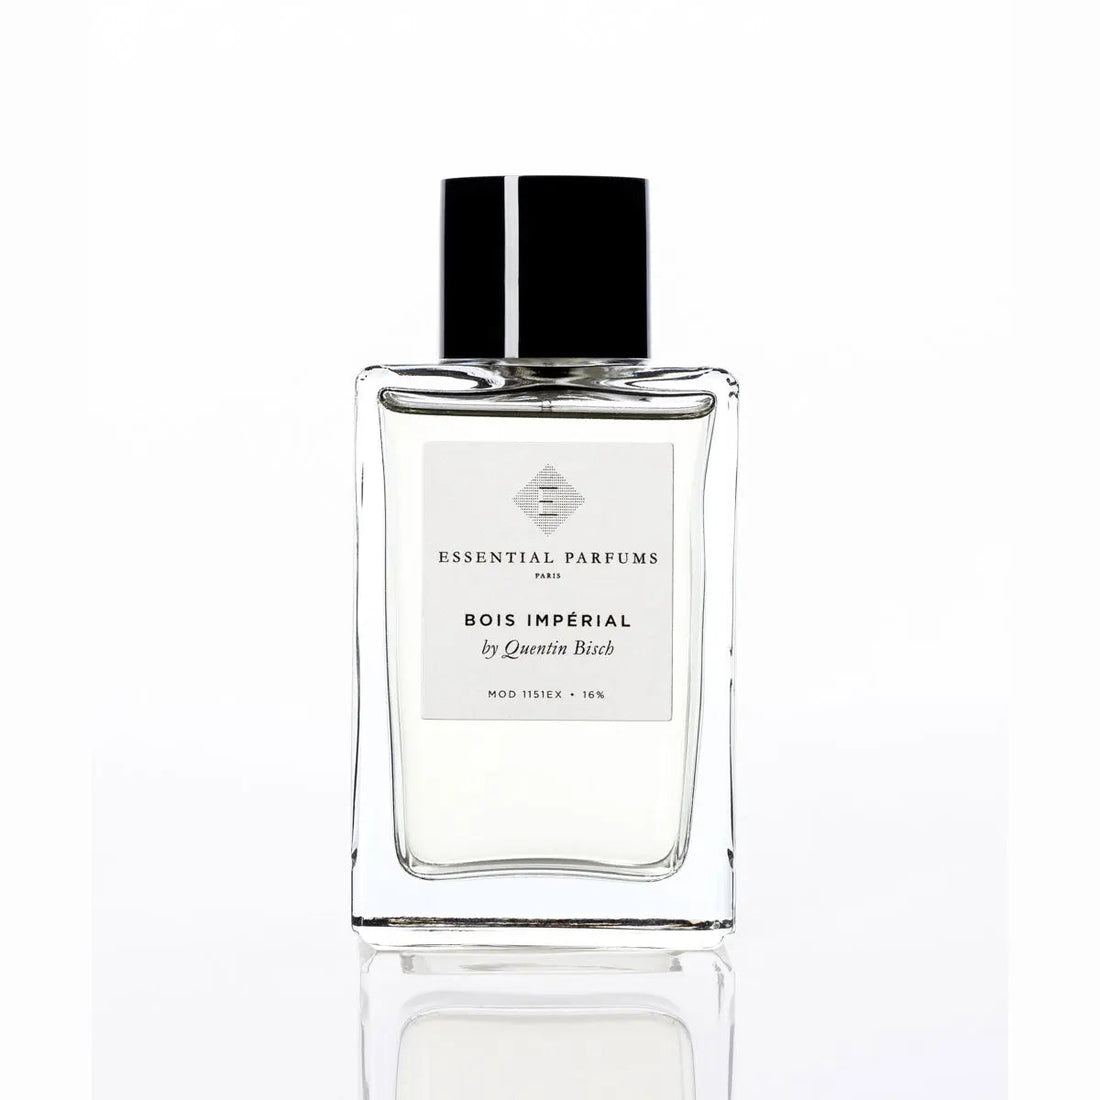 Essential parfums Bois Imperial eau de parfum - 100 ml Refillable